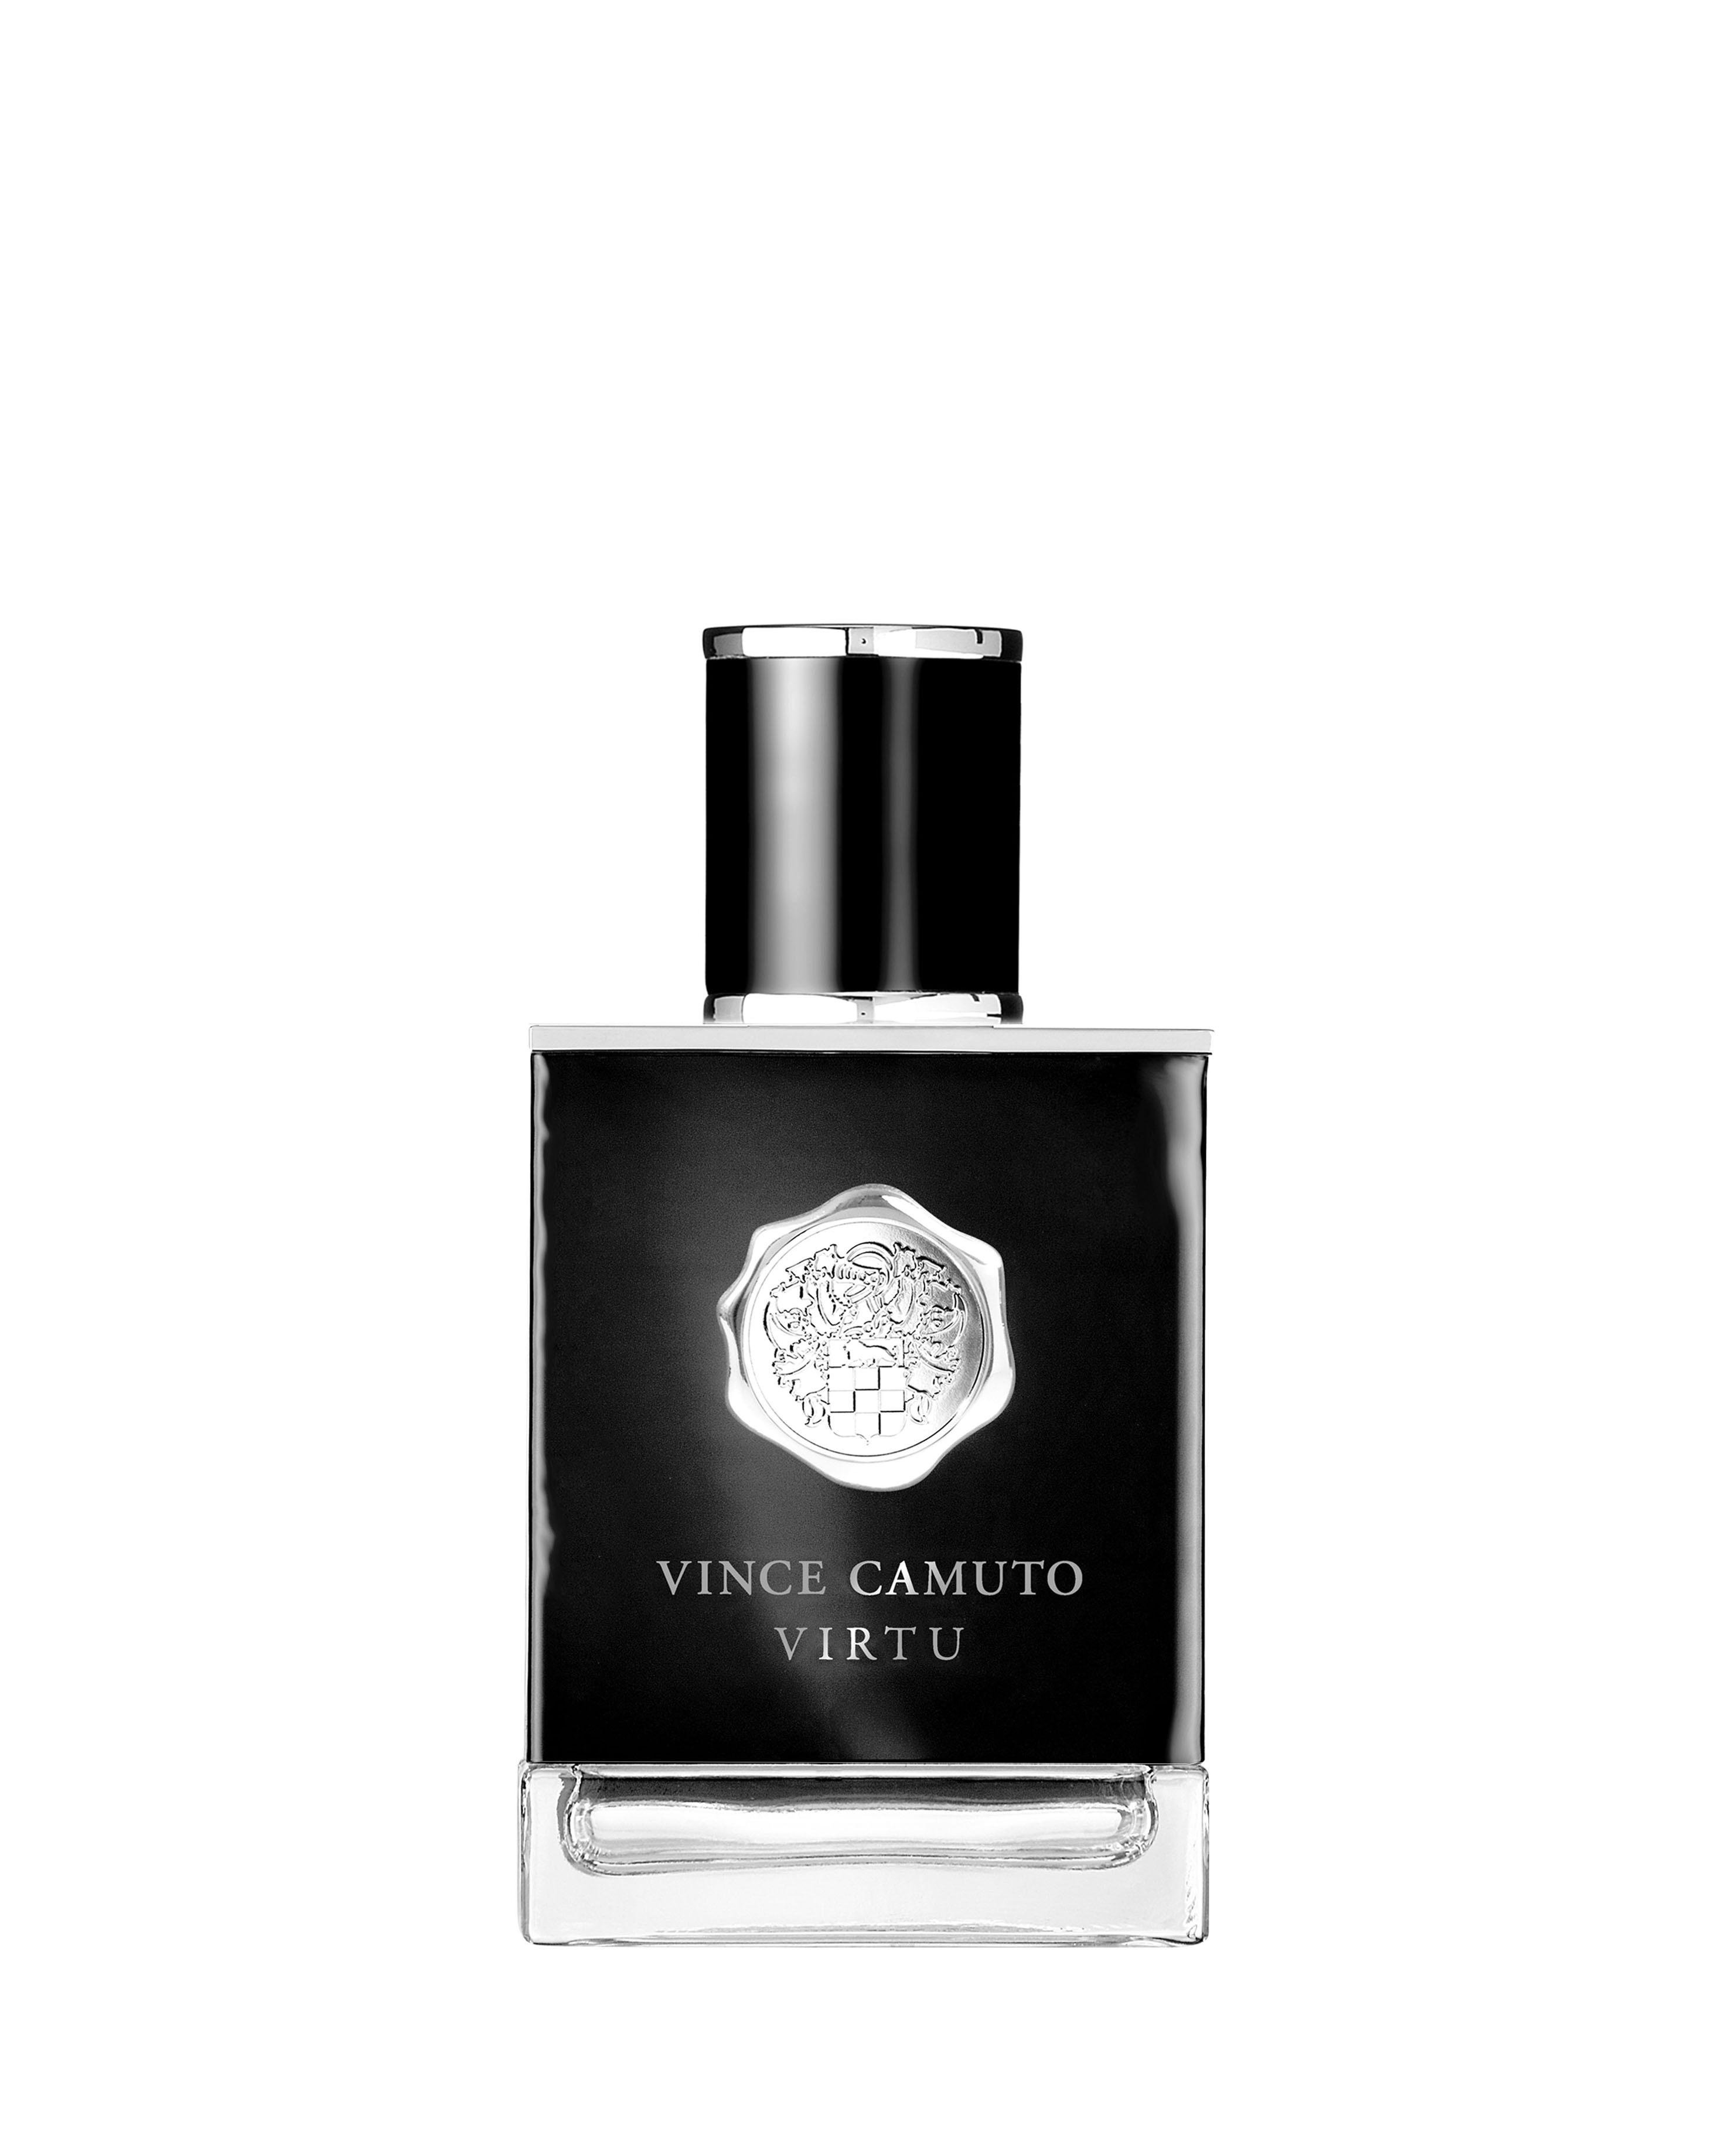 Vince Camuto Virtu 3.4 oz. Perfume and Eau De Toilette for Men